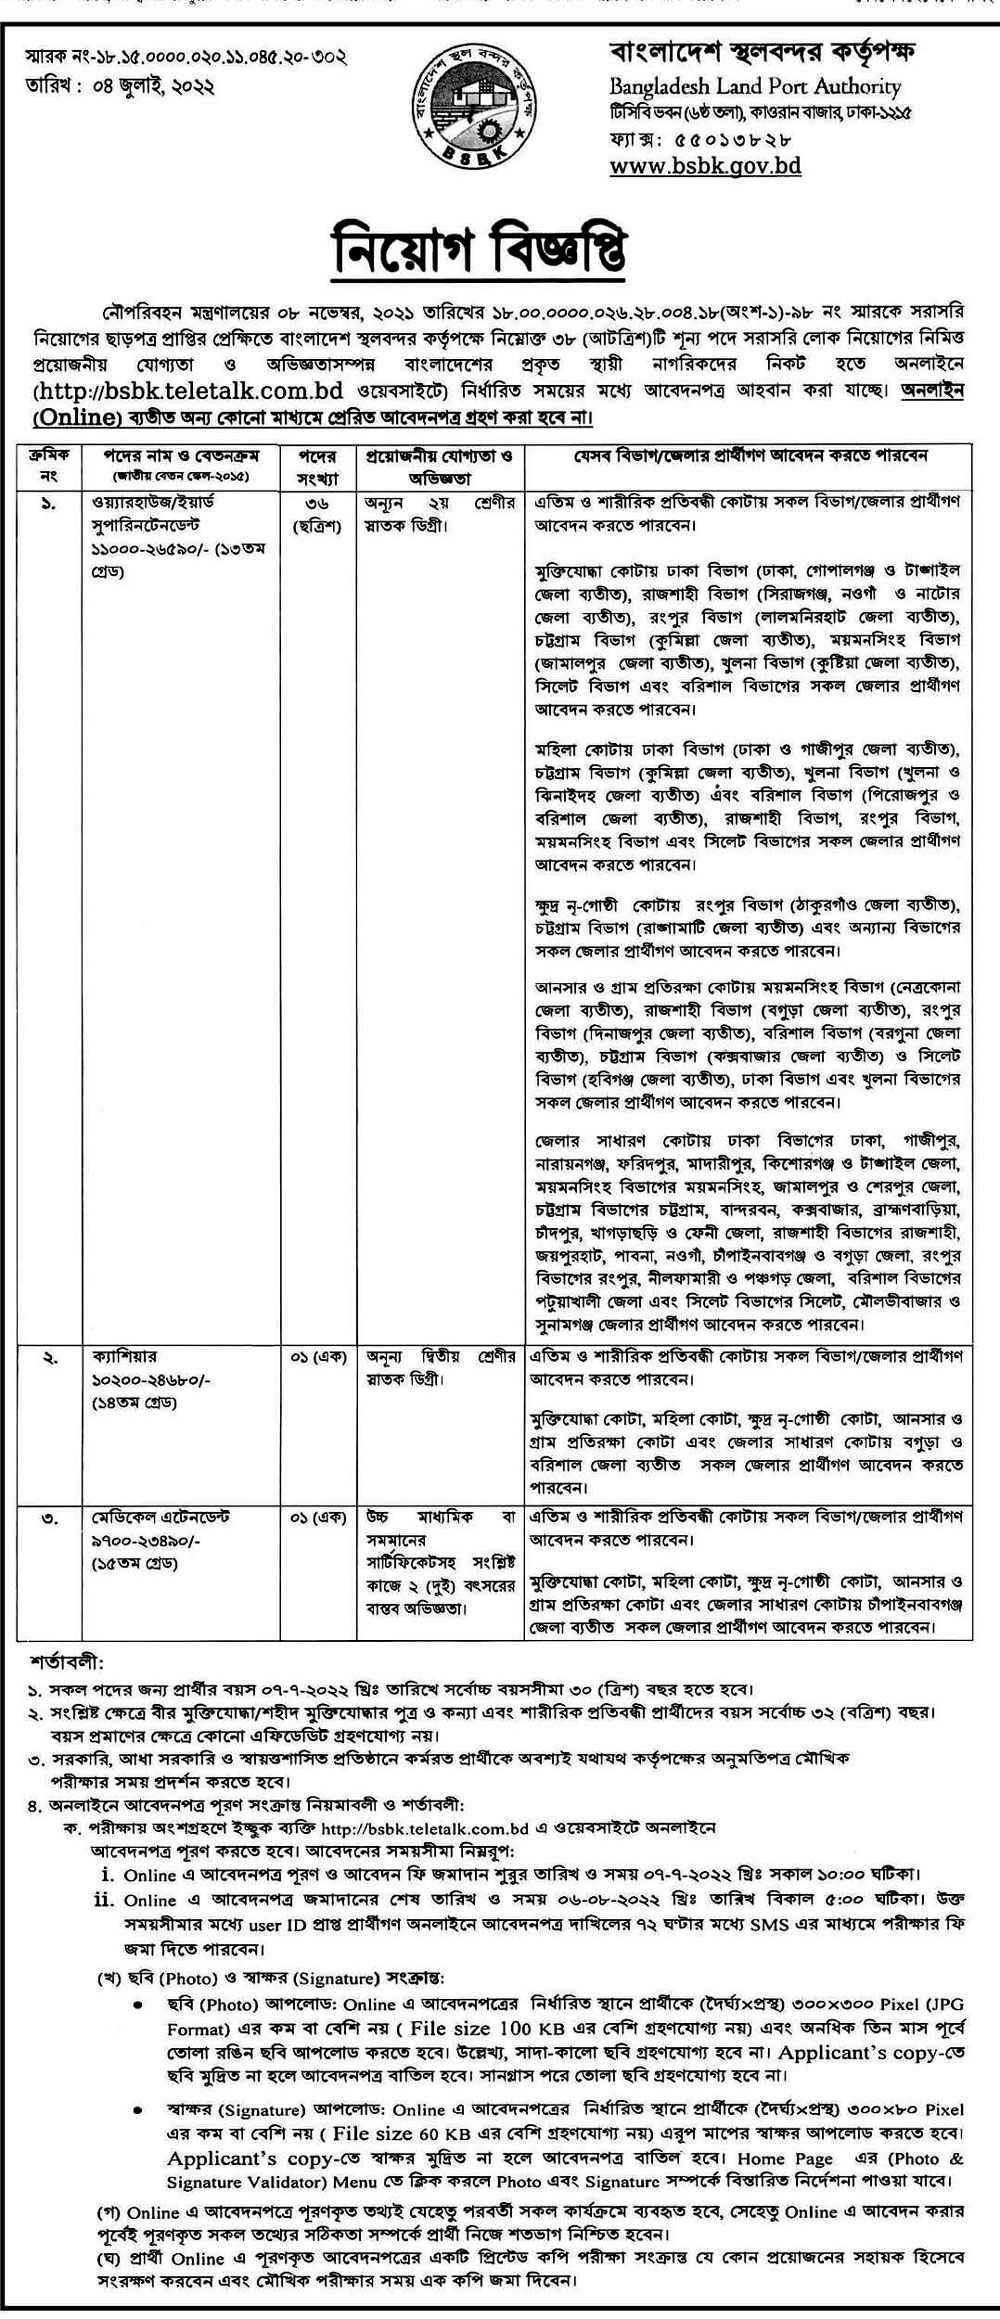 Bangladesh Land Ports Authority Job Circular 2022